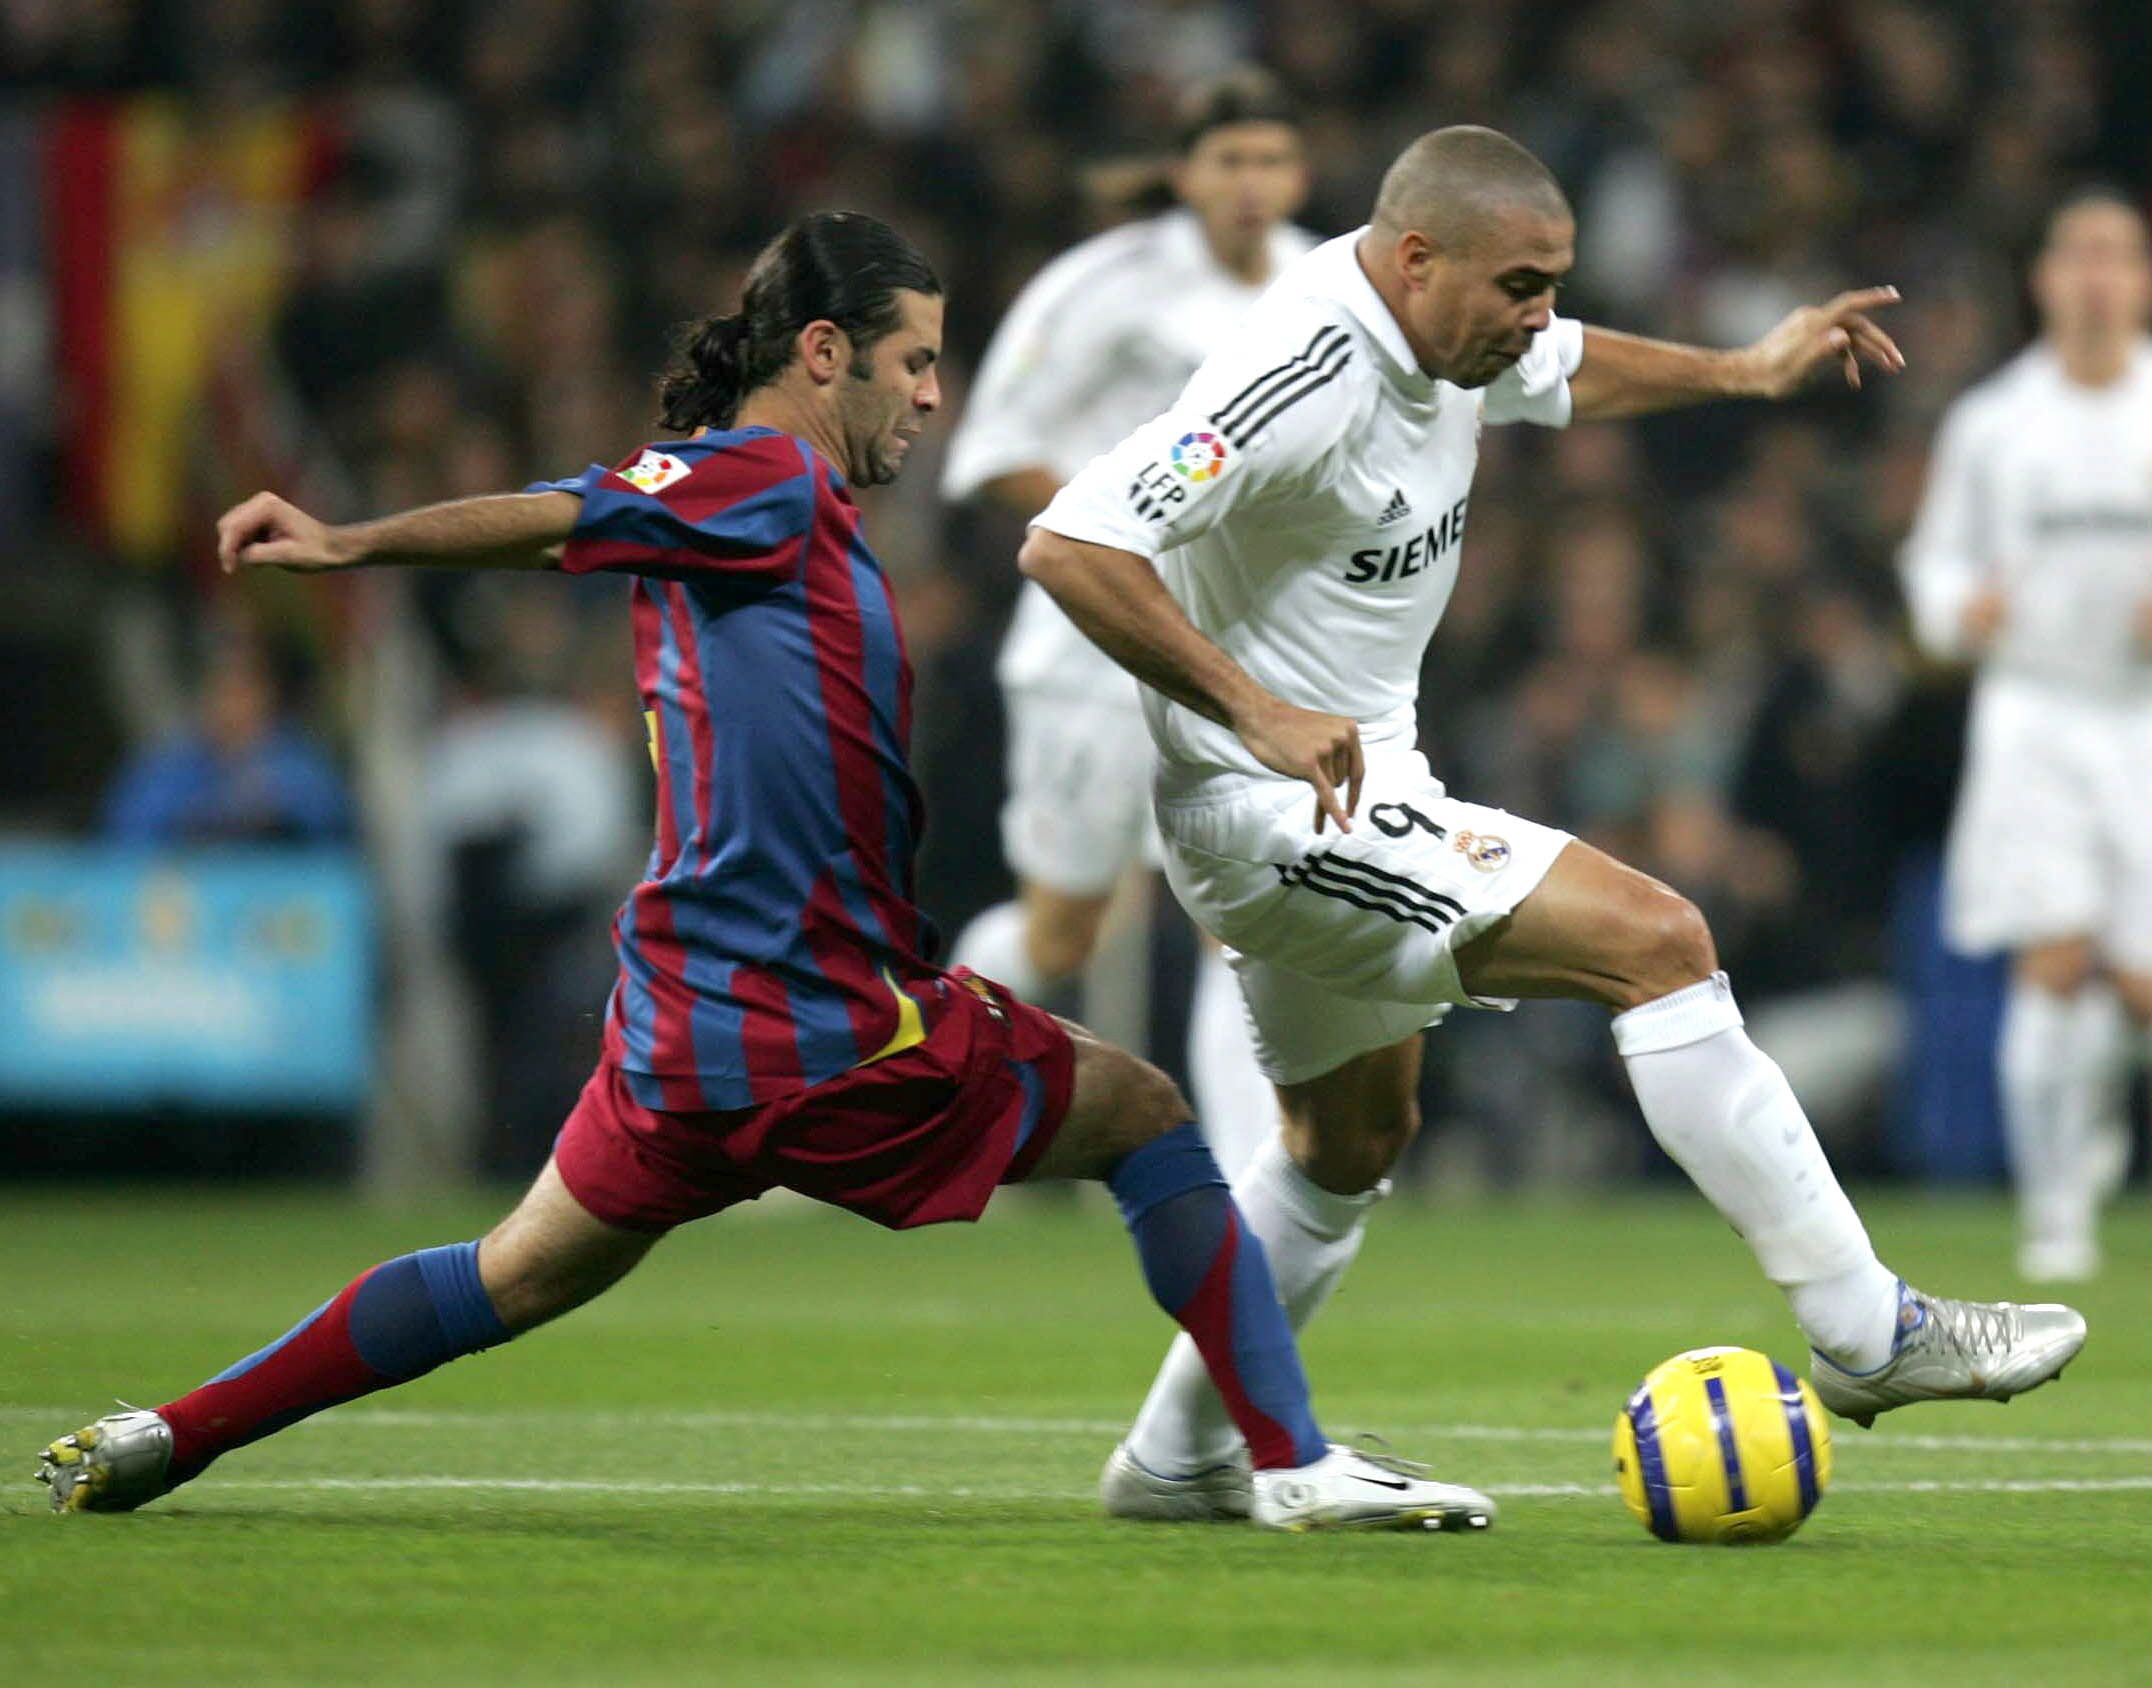 Mantan pemain Real Madrid, Ronaldo Nazario, saat berduel dengan bek Barcelona Rafael Marquez.